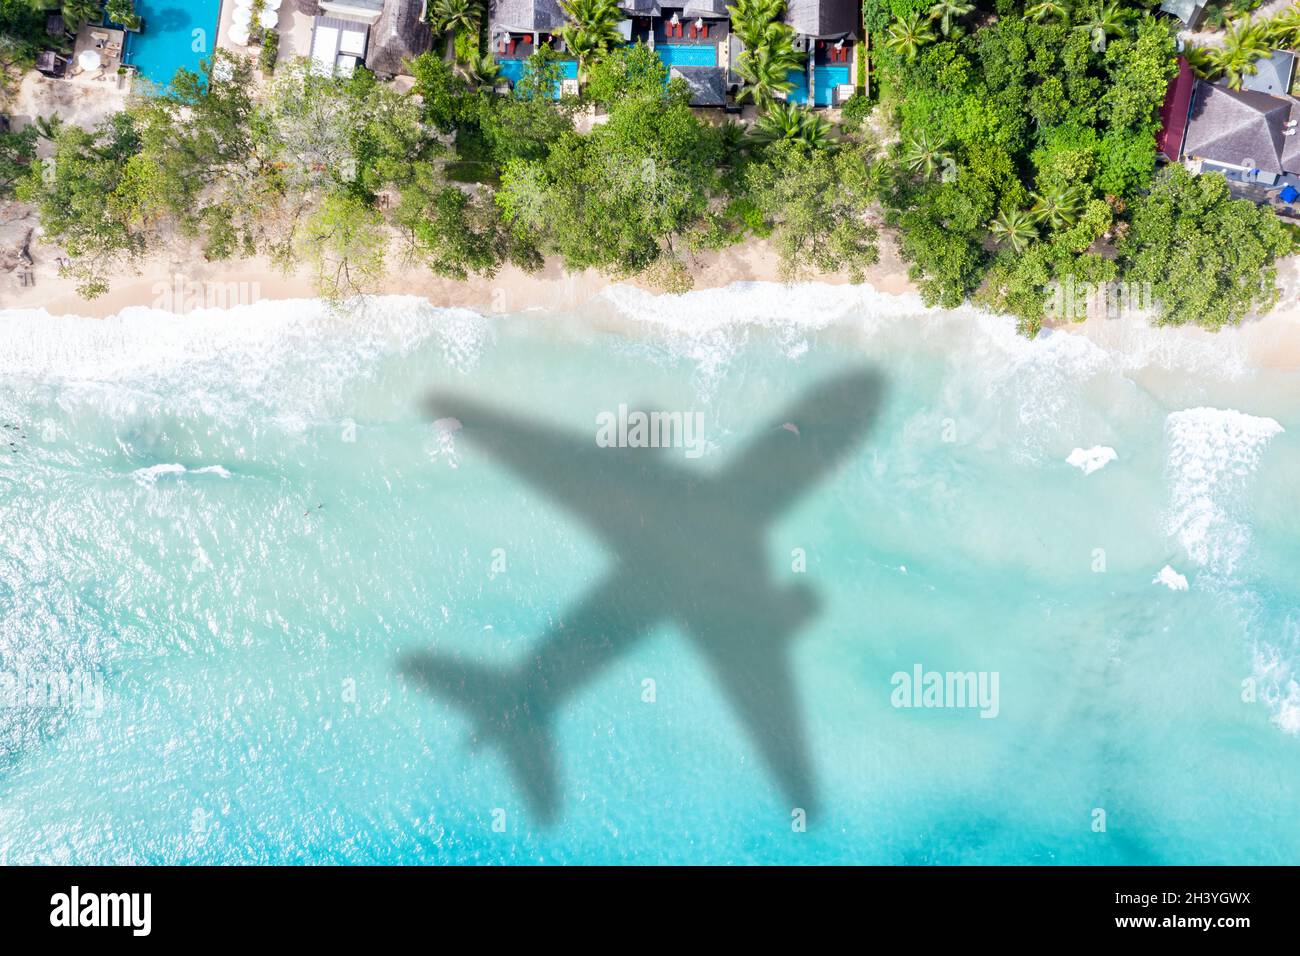 Reise Urlaub Meer Reise Symbol Bild Flugzeug fliegen Seychellen Luftbild Strand Wasser Stockfoto